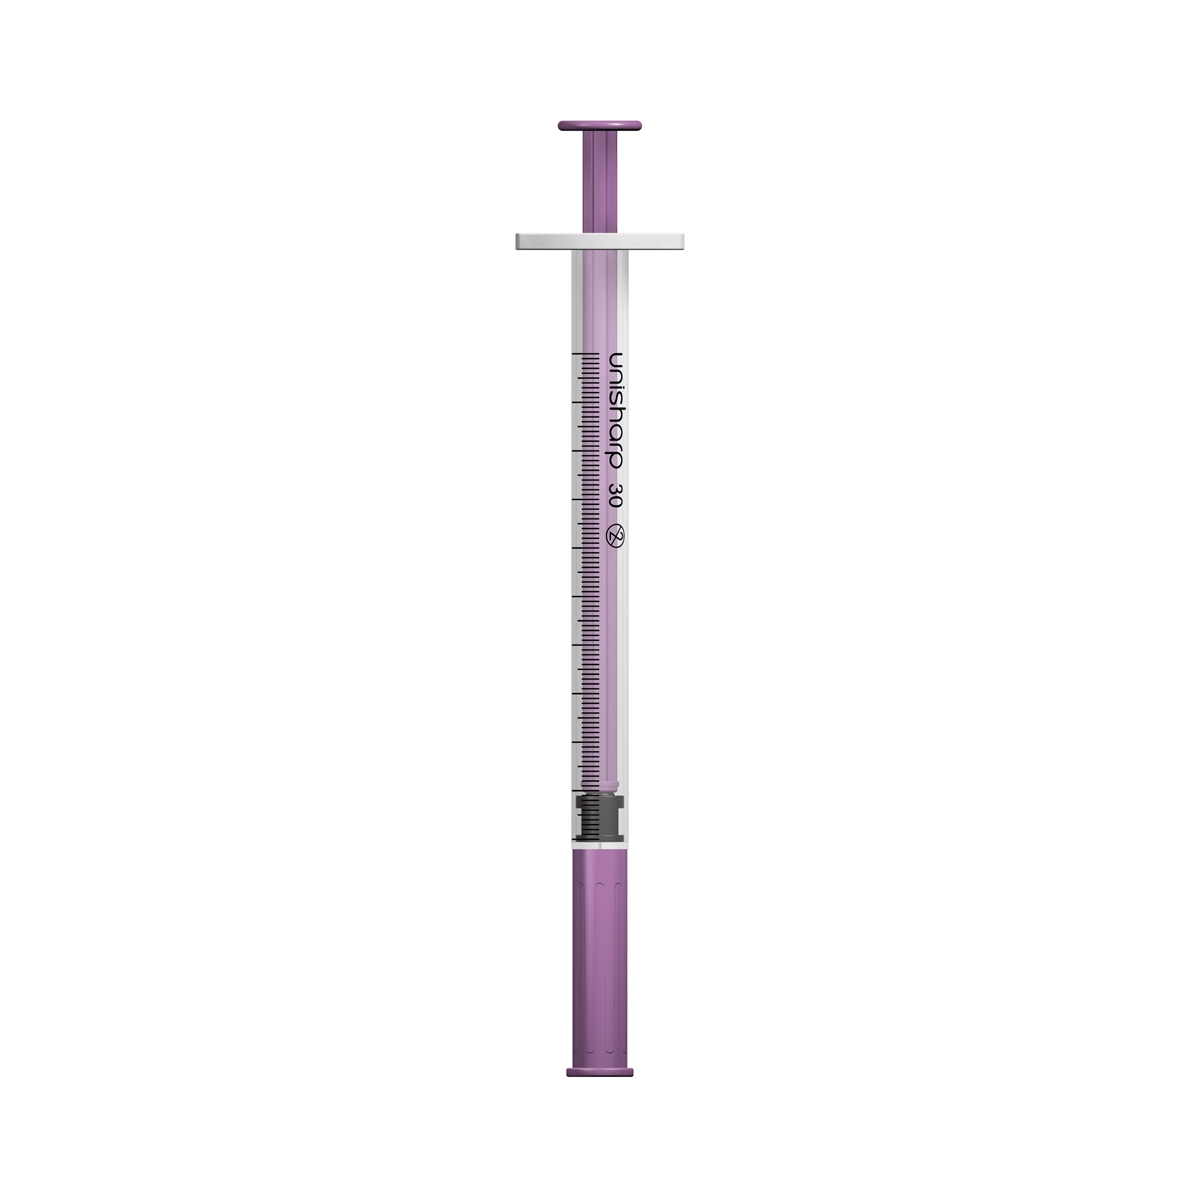 Unisharp 1ml 30G fixed needle syringe: purple